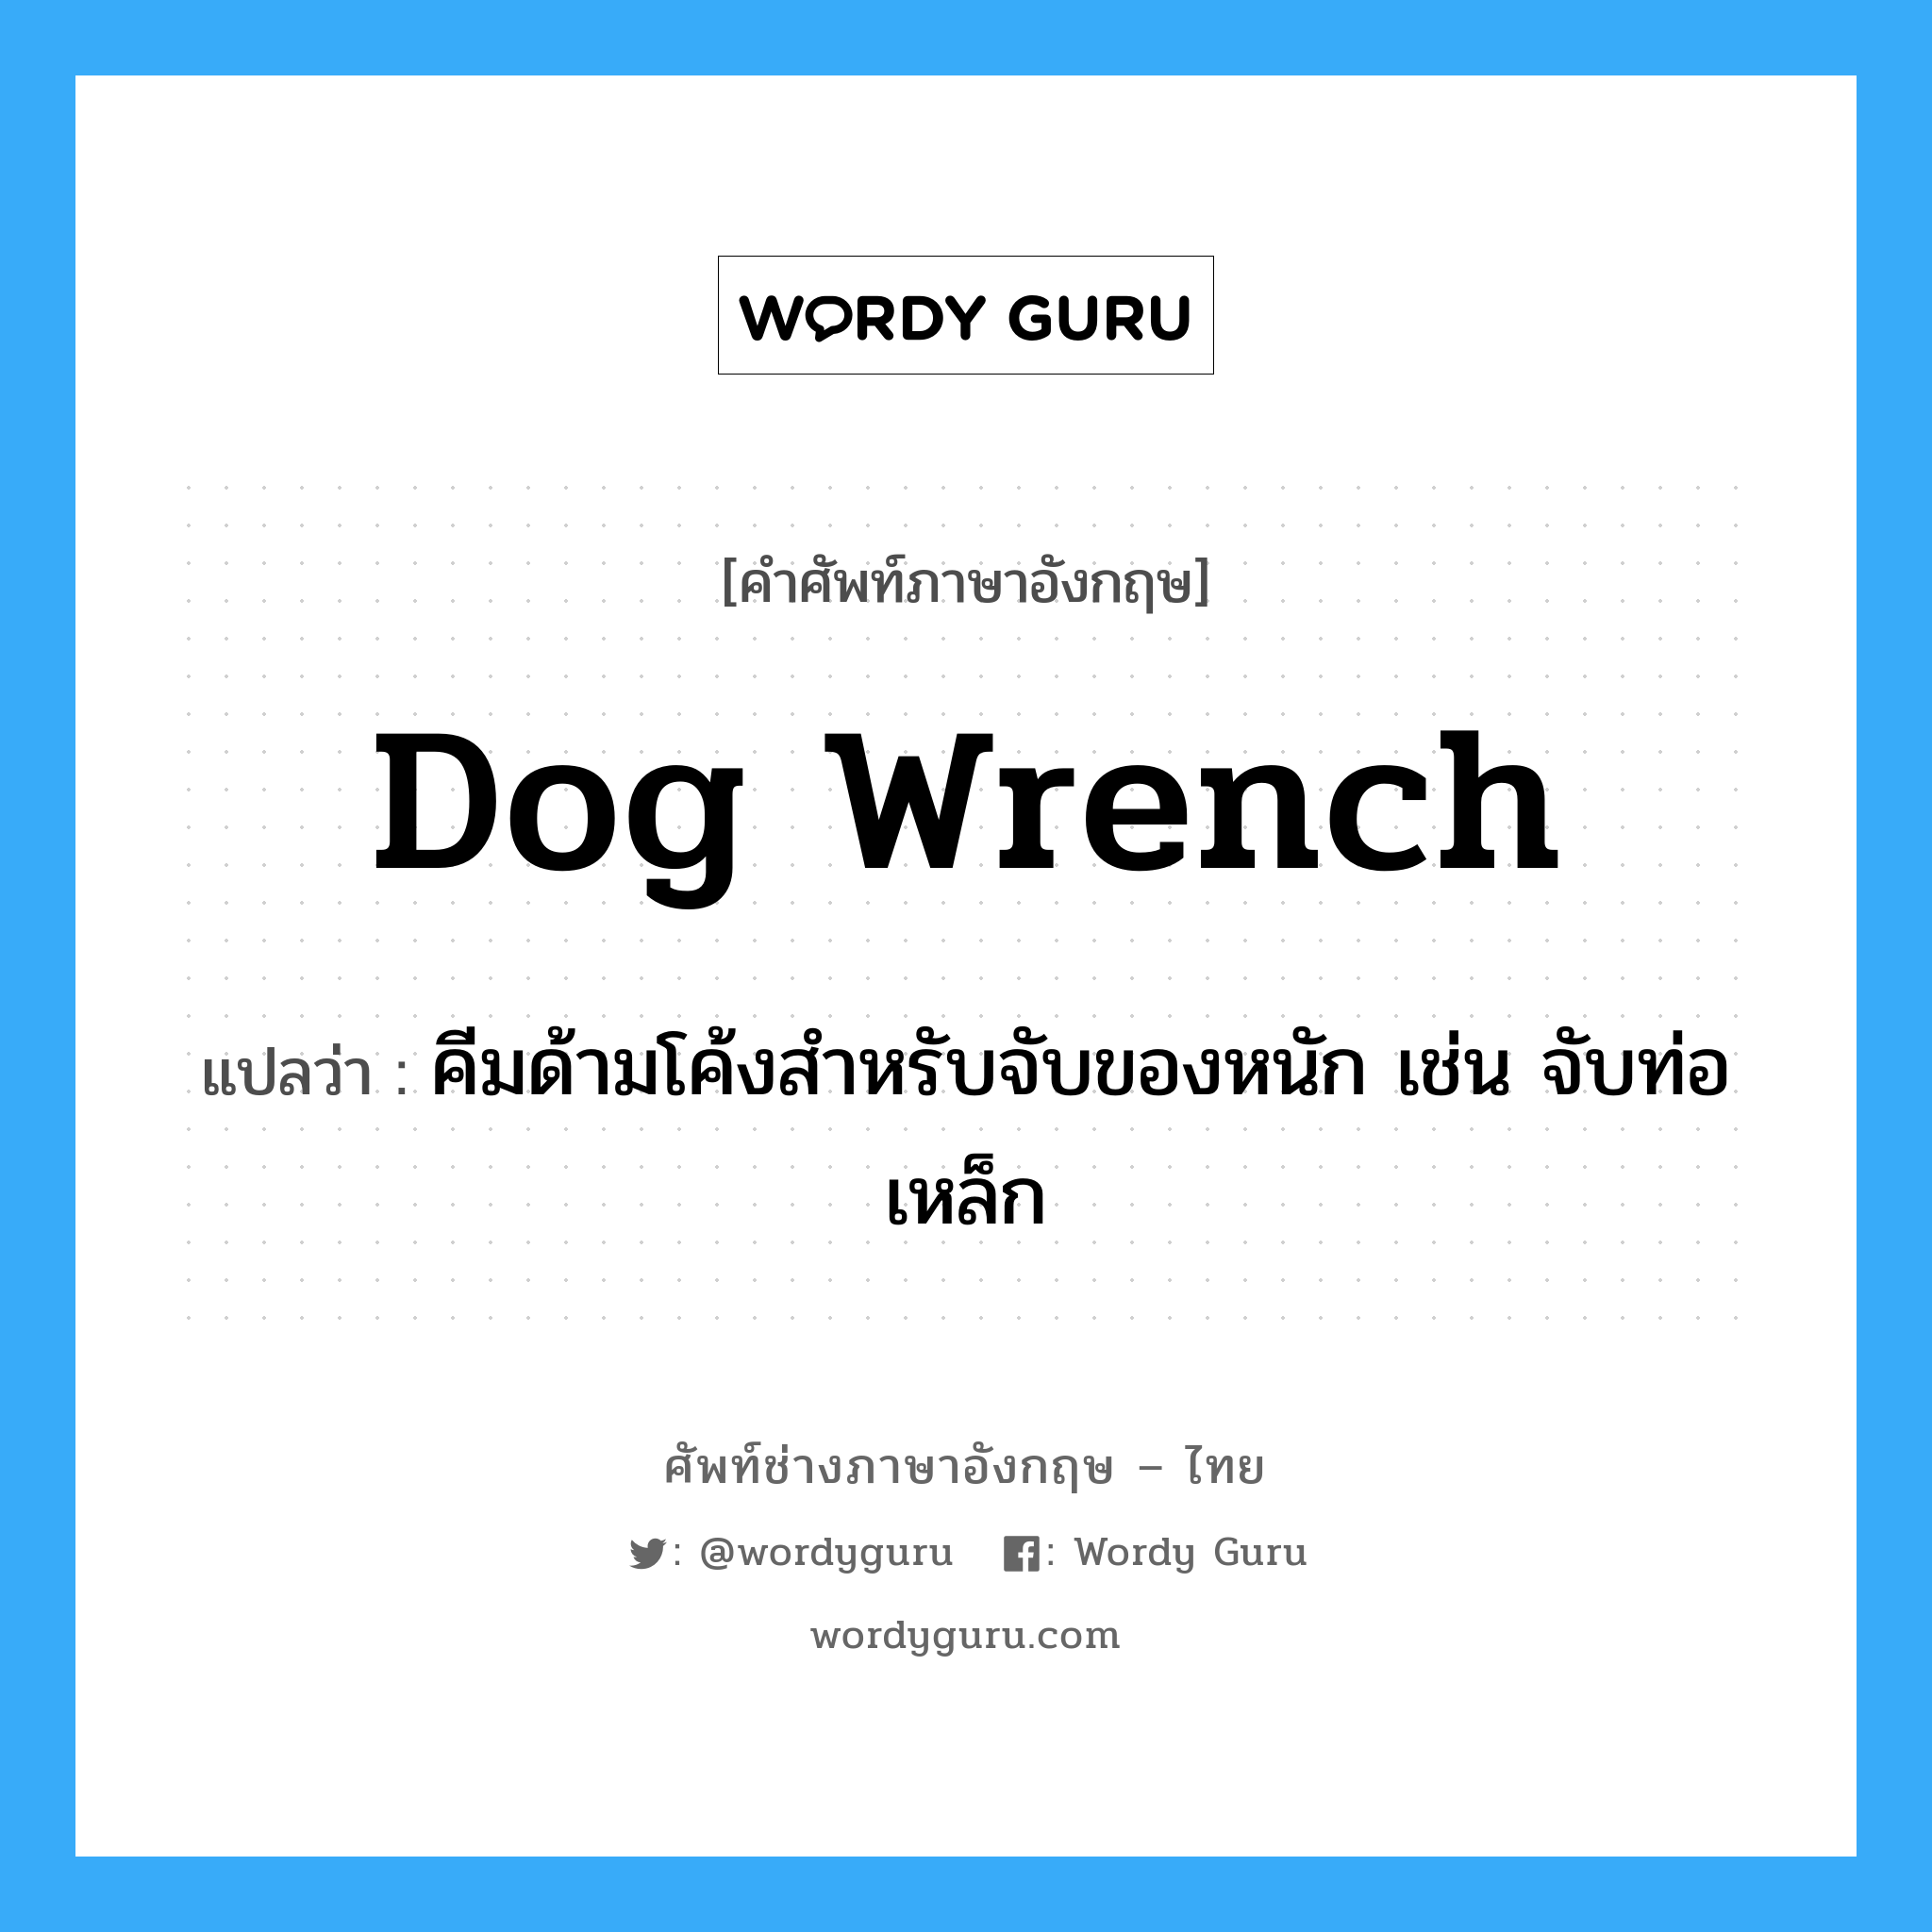 dog wrench แปลว่า?, คำศัพท์ช่างภาษาอังกฤษ - ไทย dog wrench คำศัพท์ภาษาอังกฤษ dog wrench แปลว่า คีมด้ามโค้งสำหรับจับของหนัก เช่น จับท่อเหล็ก